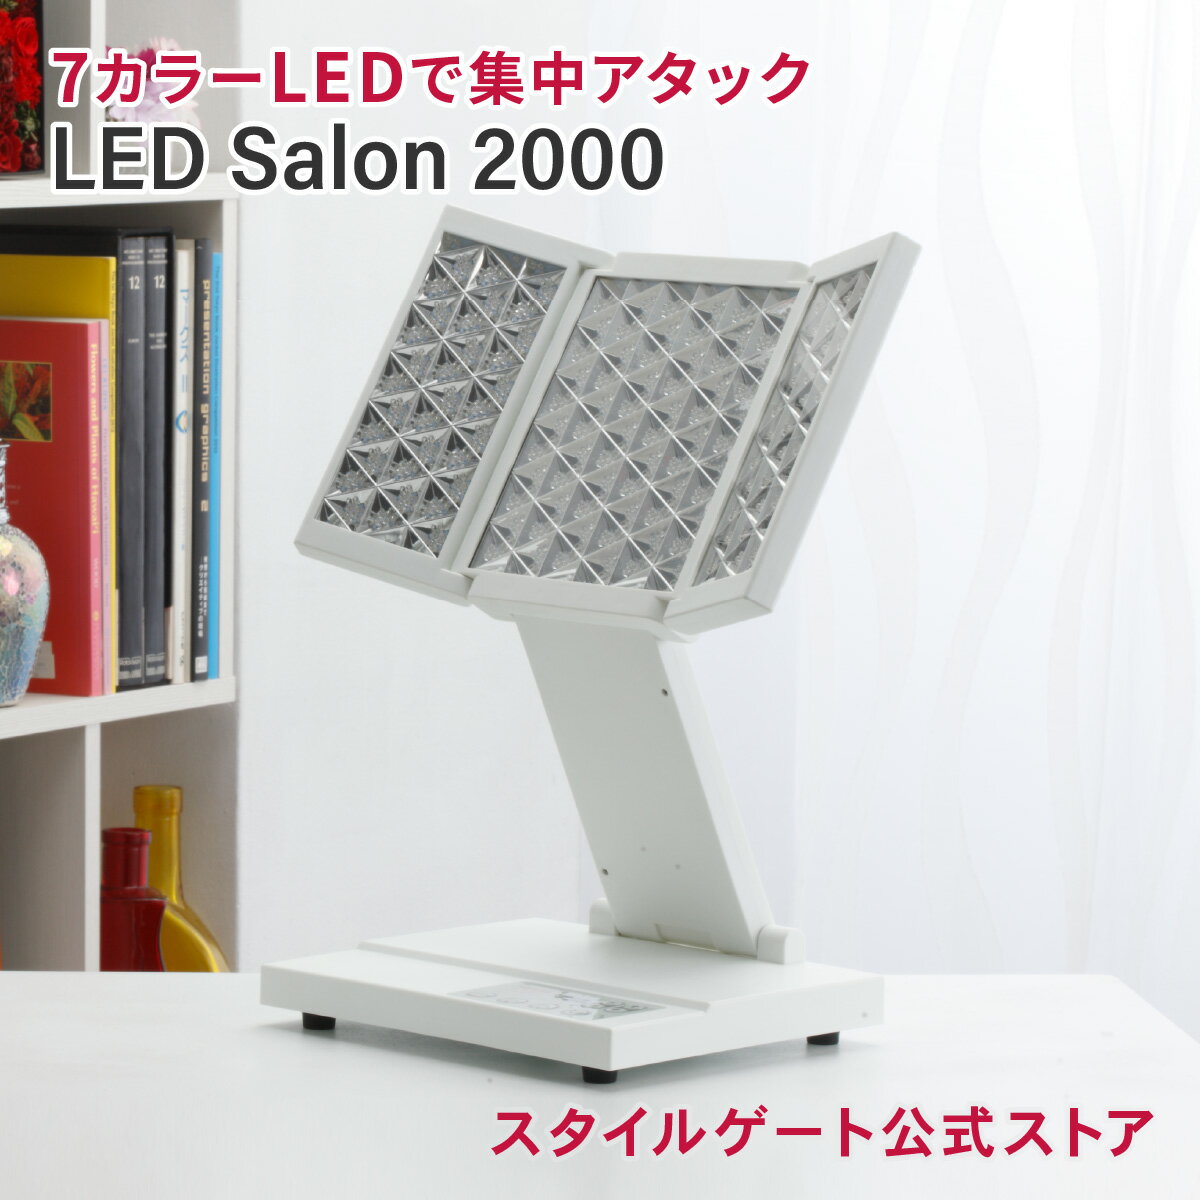 LED美顔器 LED Salon 2000 エステ 光美容器 LED エイジングケア コラーゲンマシン 美肌 全身ケア ニキビ